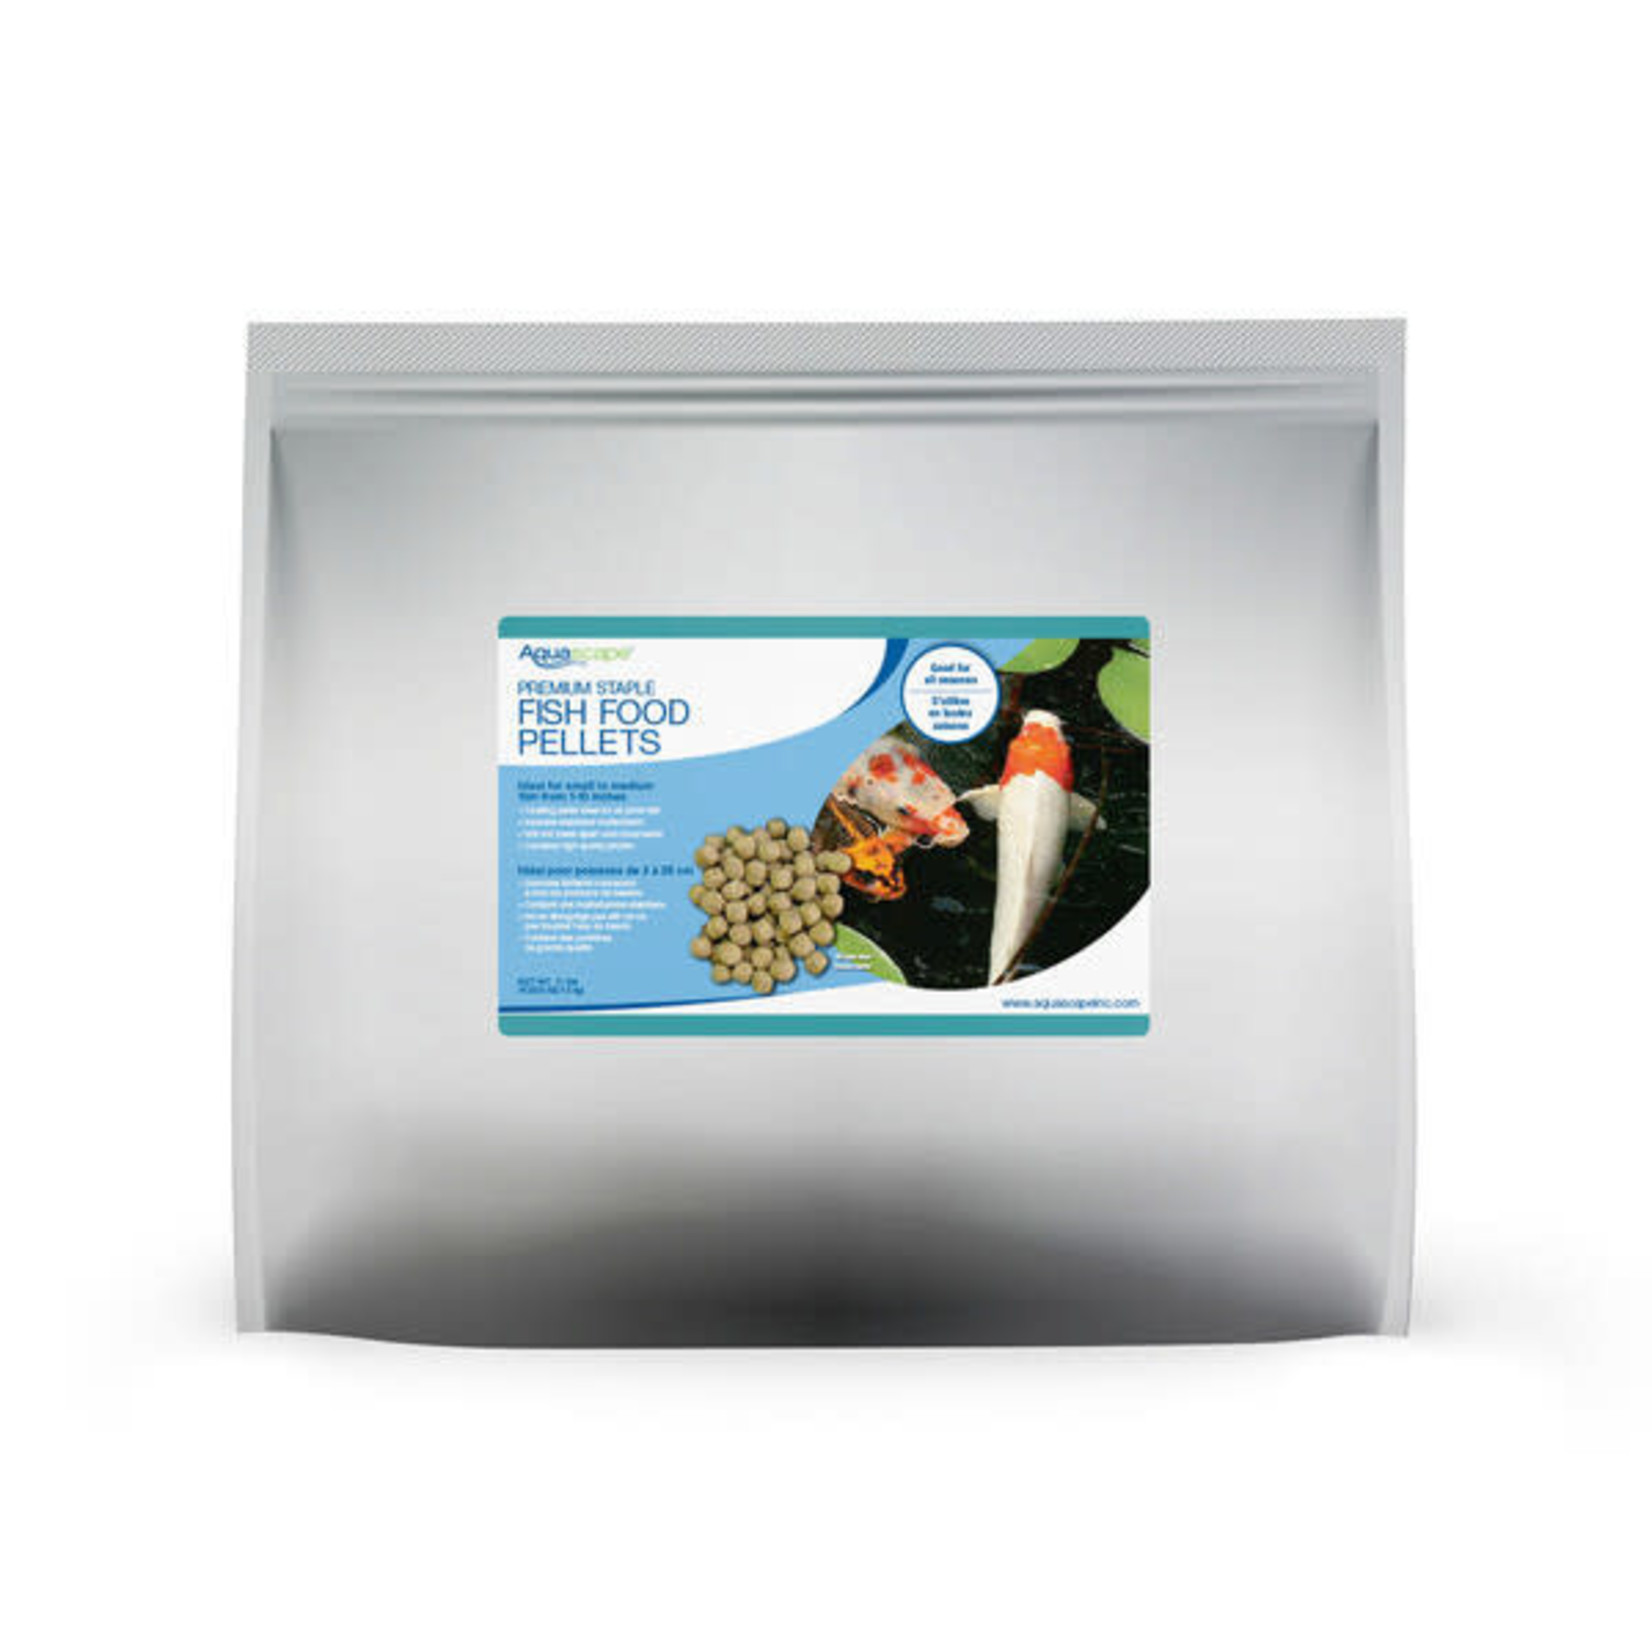 Aquascape Premium Staple Fish Food Pellets - Large Pellets - 11 lbs / 5 kg